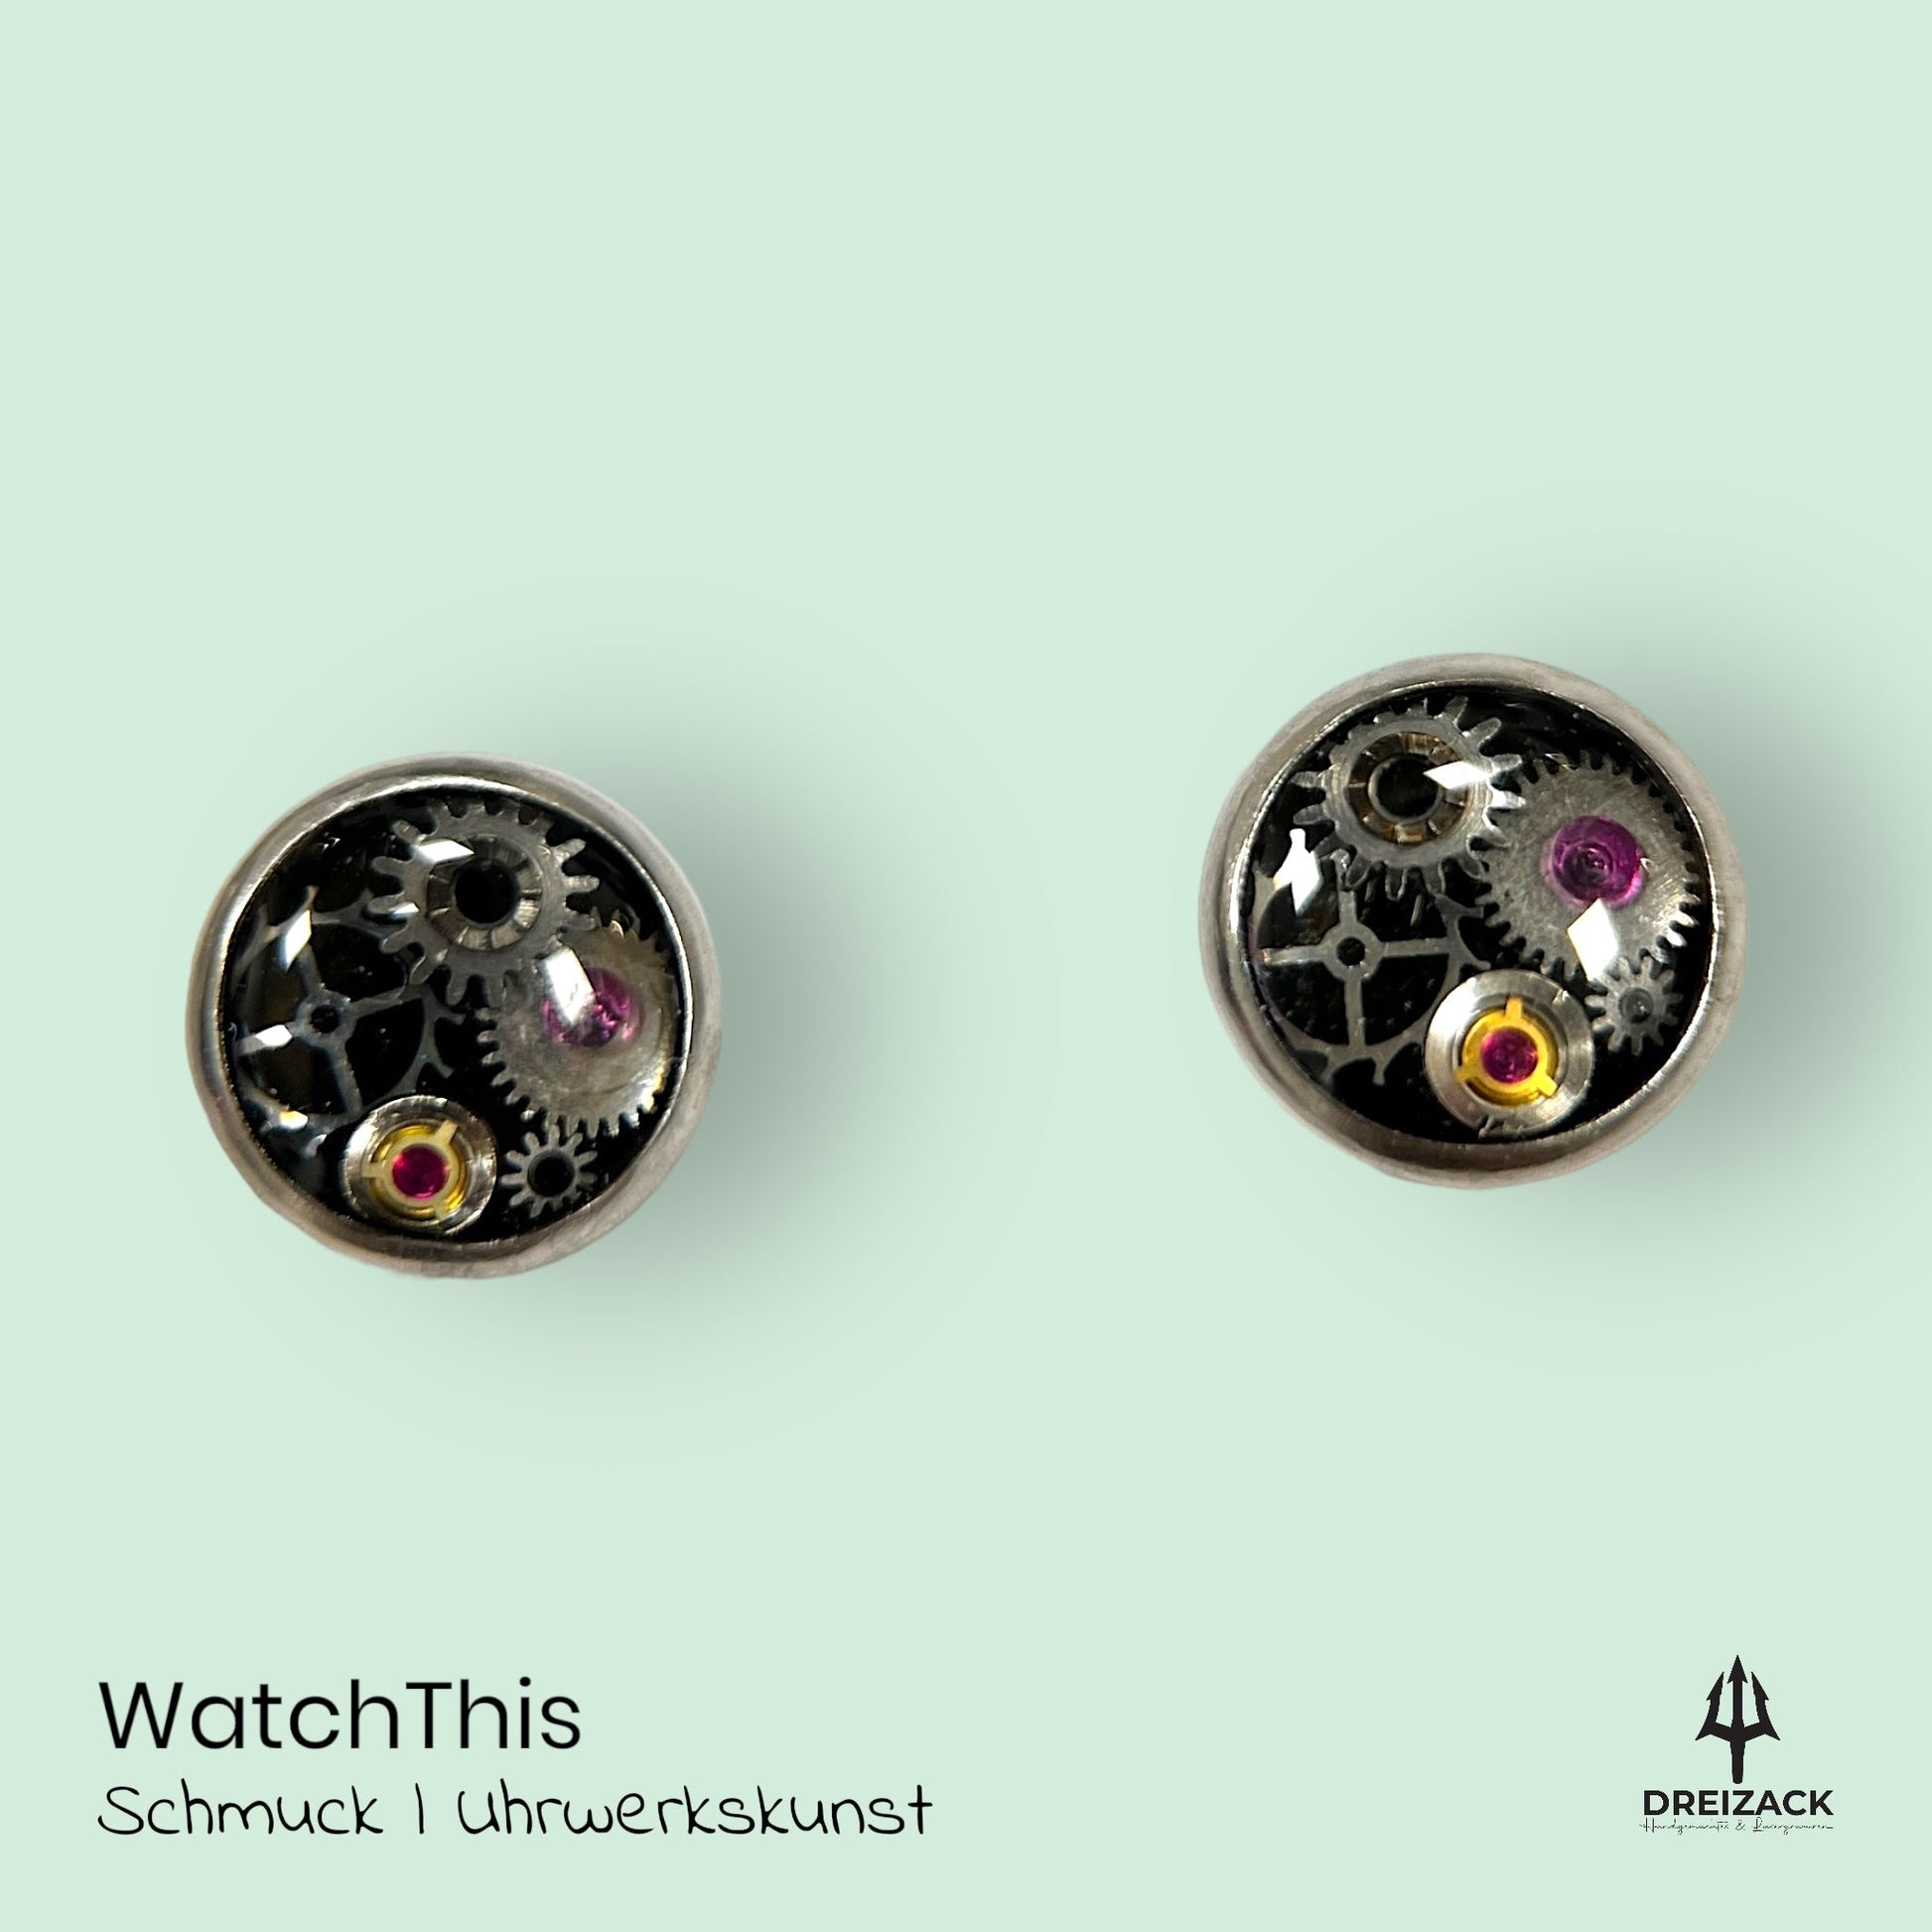 Ohrstecker von WatchThis - Zeitlose Eleganz aus Uhrwerken 6mm | Chloe Schmuck WatchThis oesterreich handgemachte geschenke in wien